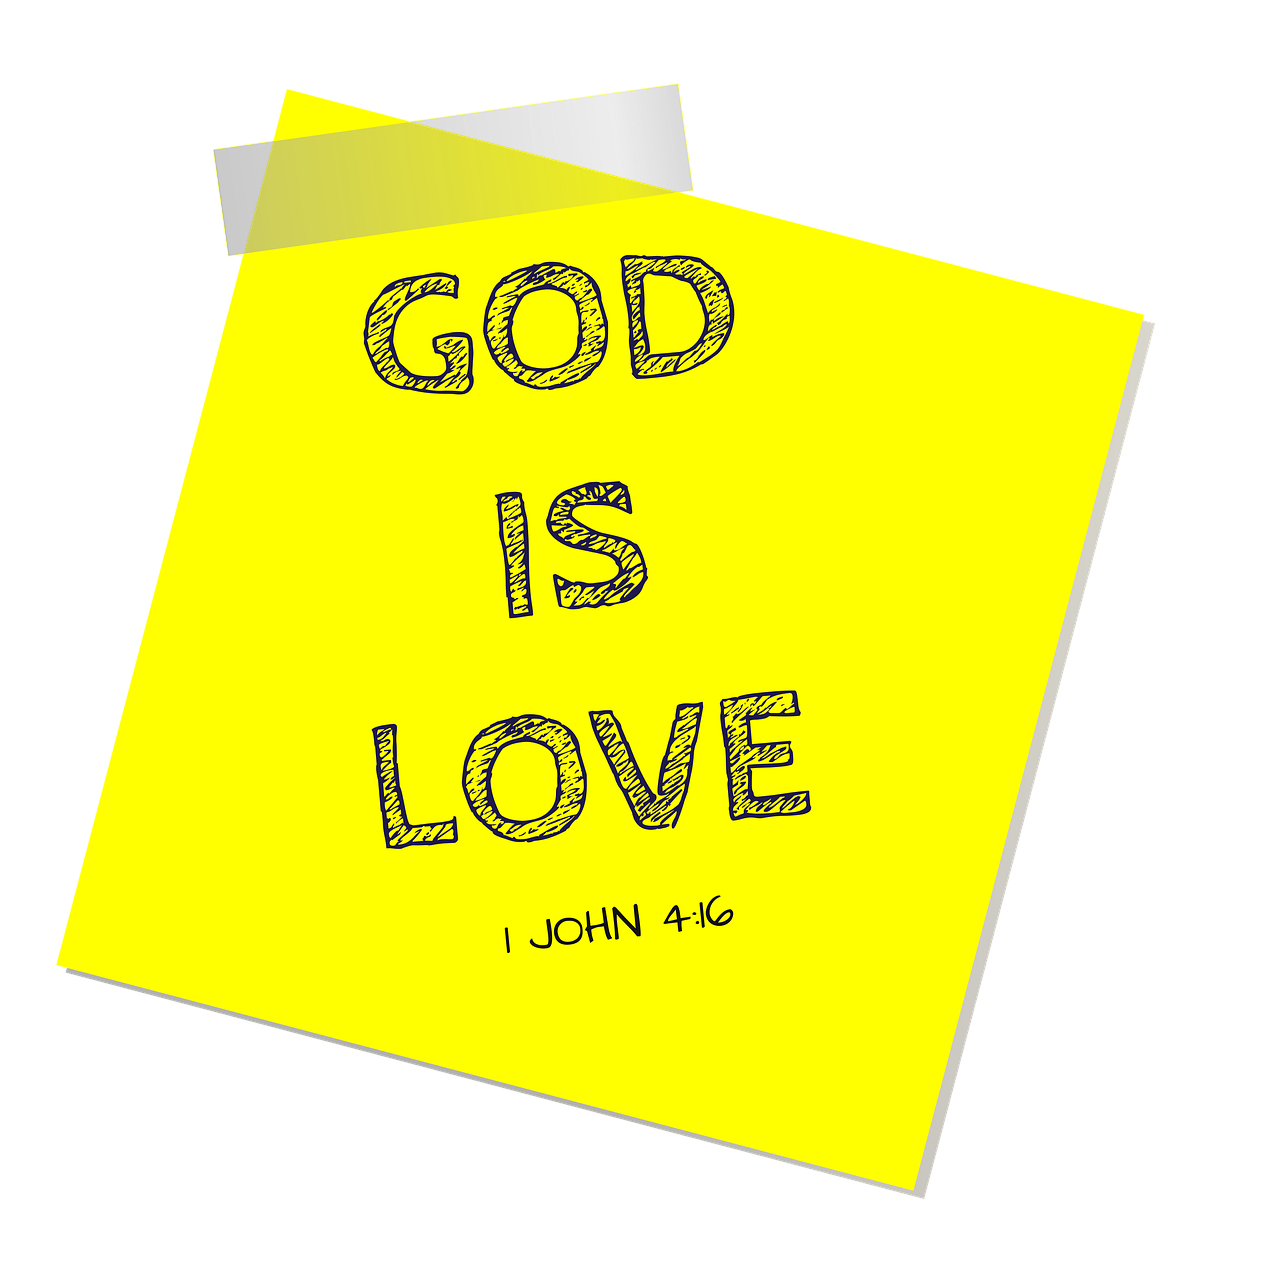 Dievas,  Meilė,  Religinis,  Bažnyčia,  Biblija,  Raštai,  Tikėjimas,  Jėzus,  Katalikai,  Protestantai